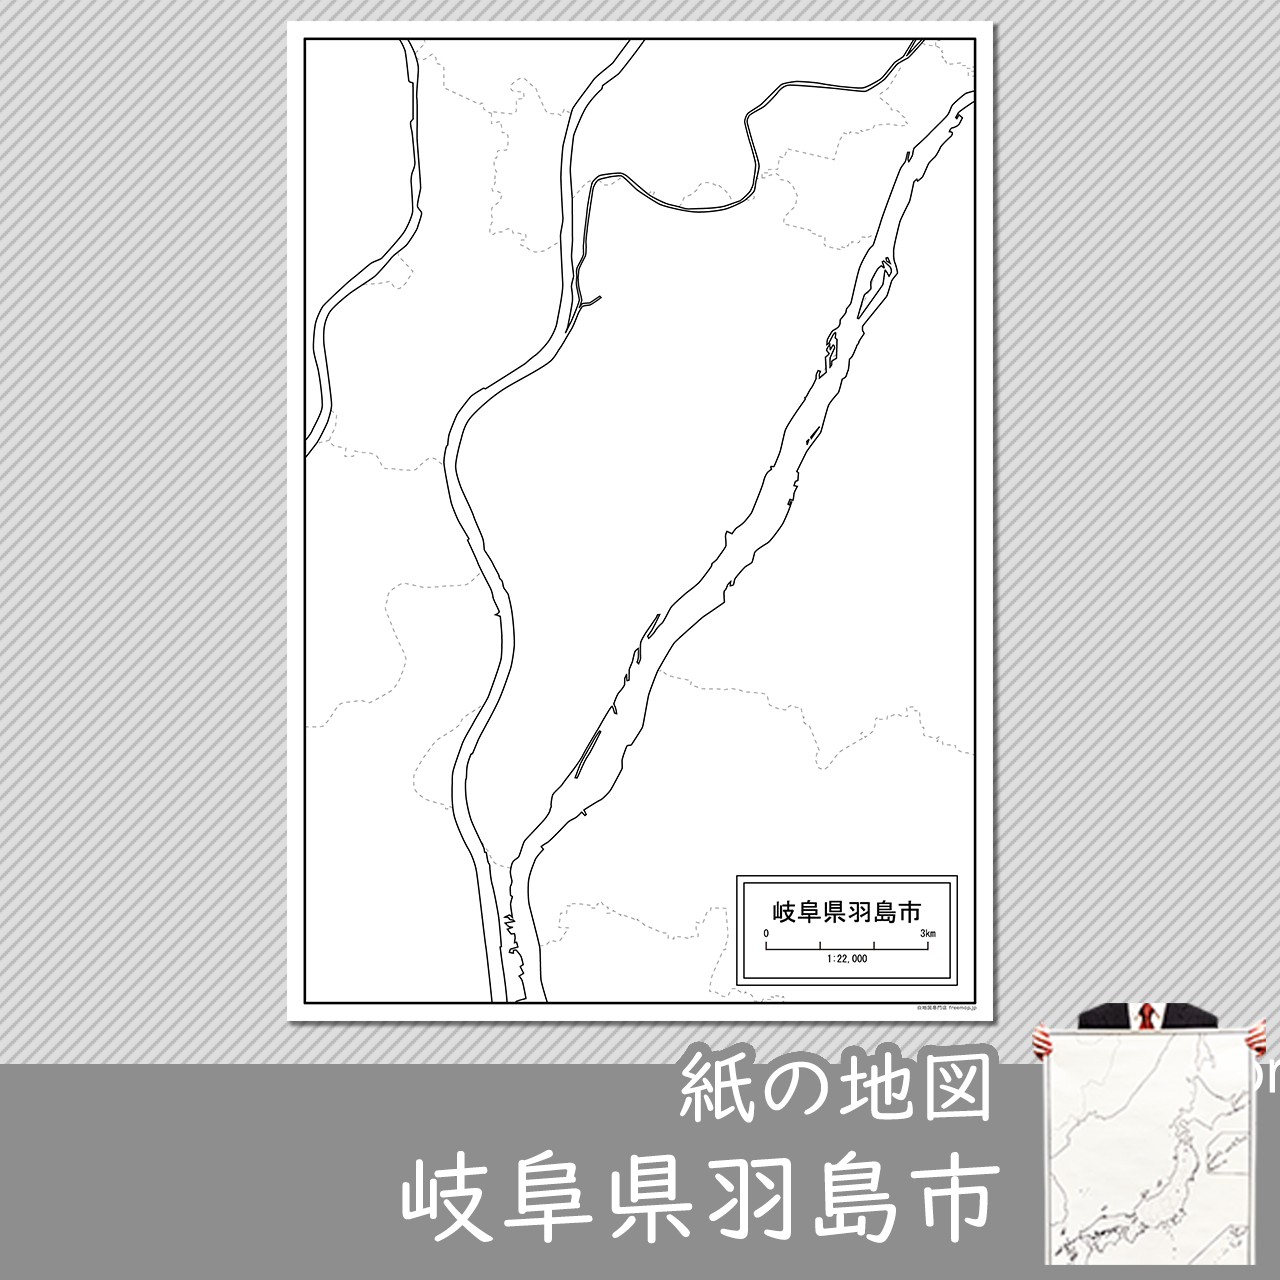 羽島市の紙の白地図のサムネイル